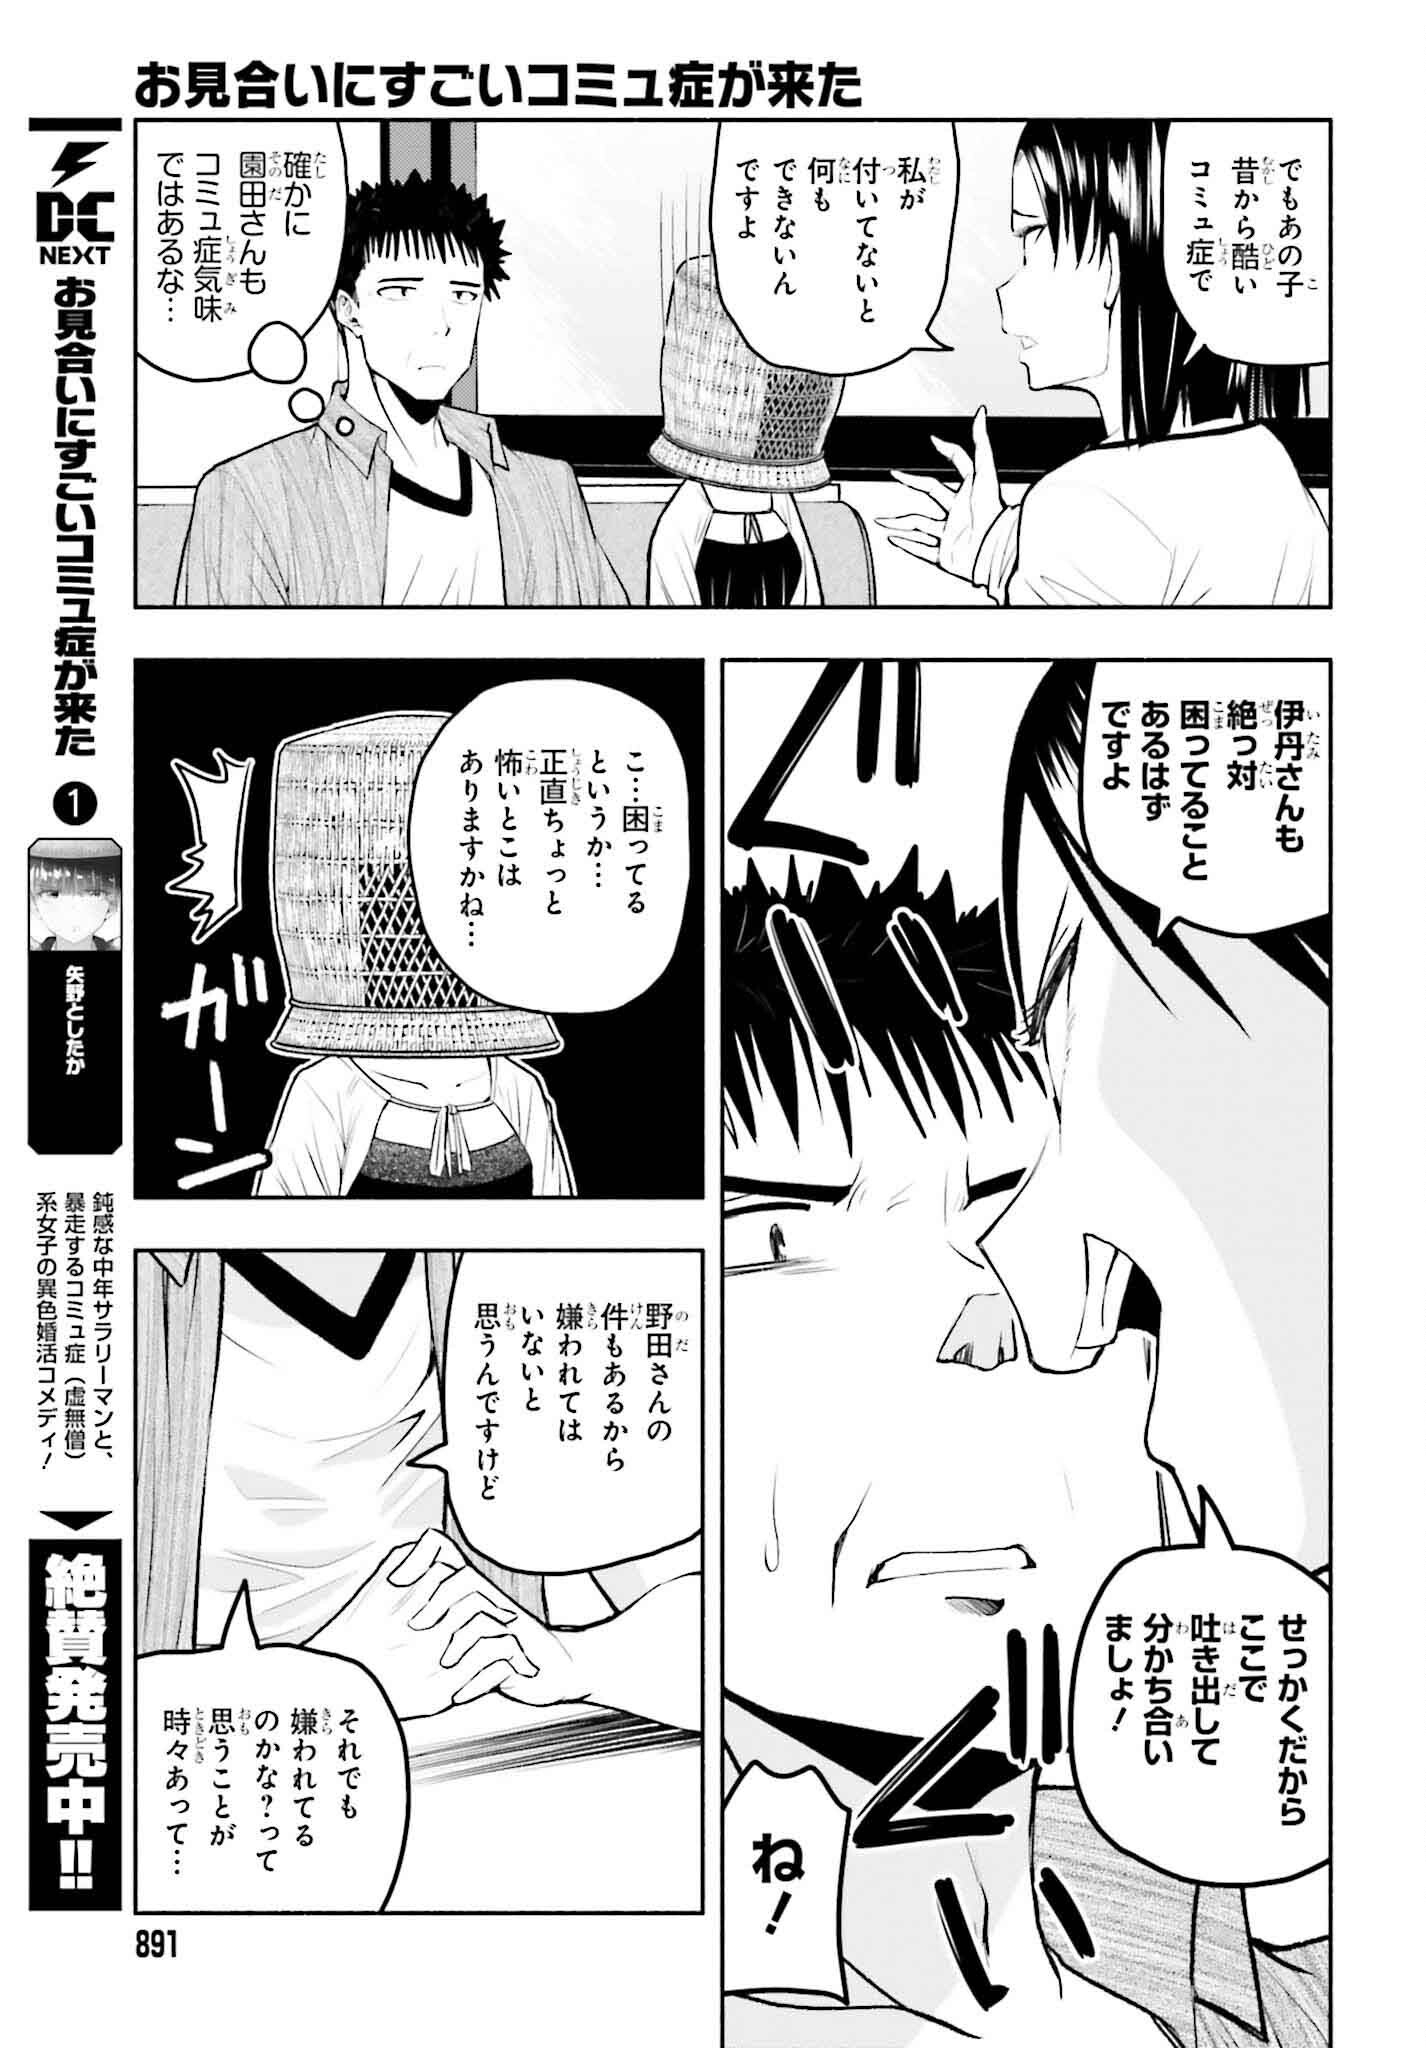 Omiai ni Sugoi Komyushou ga Kita - Chapter 16 - Page 3